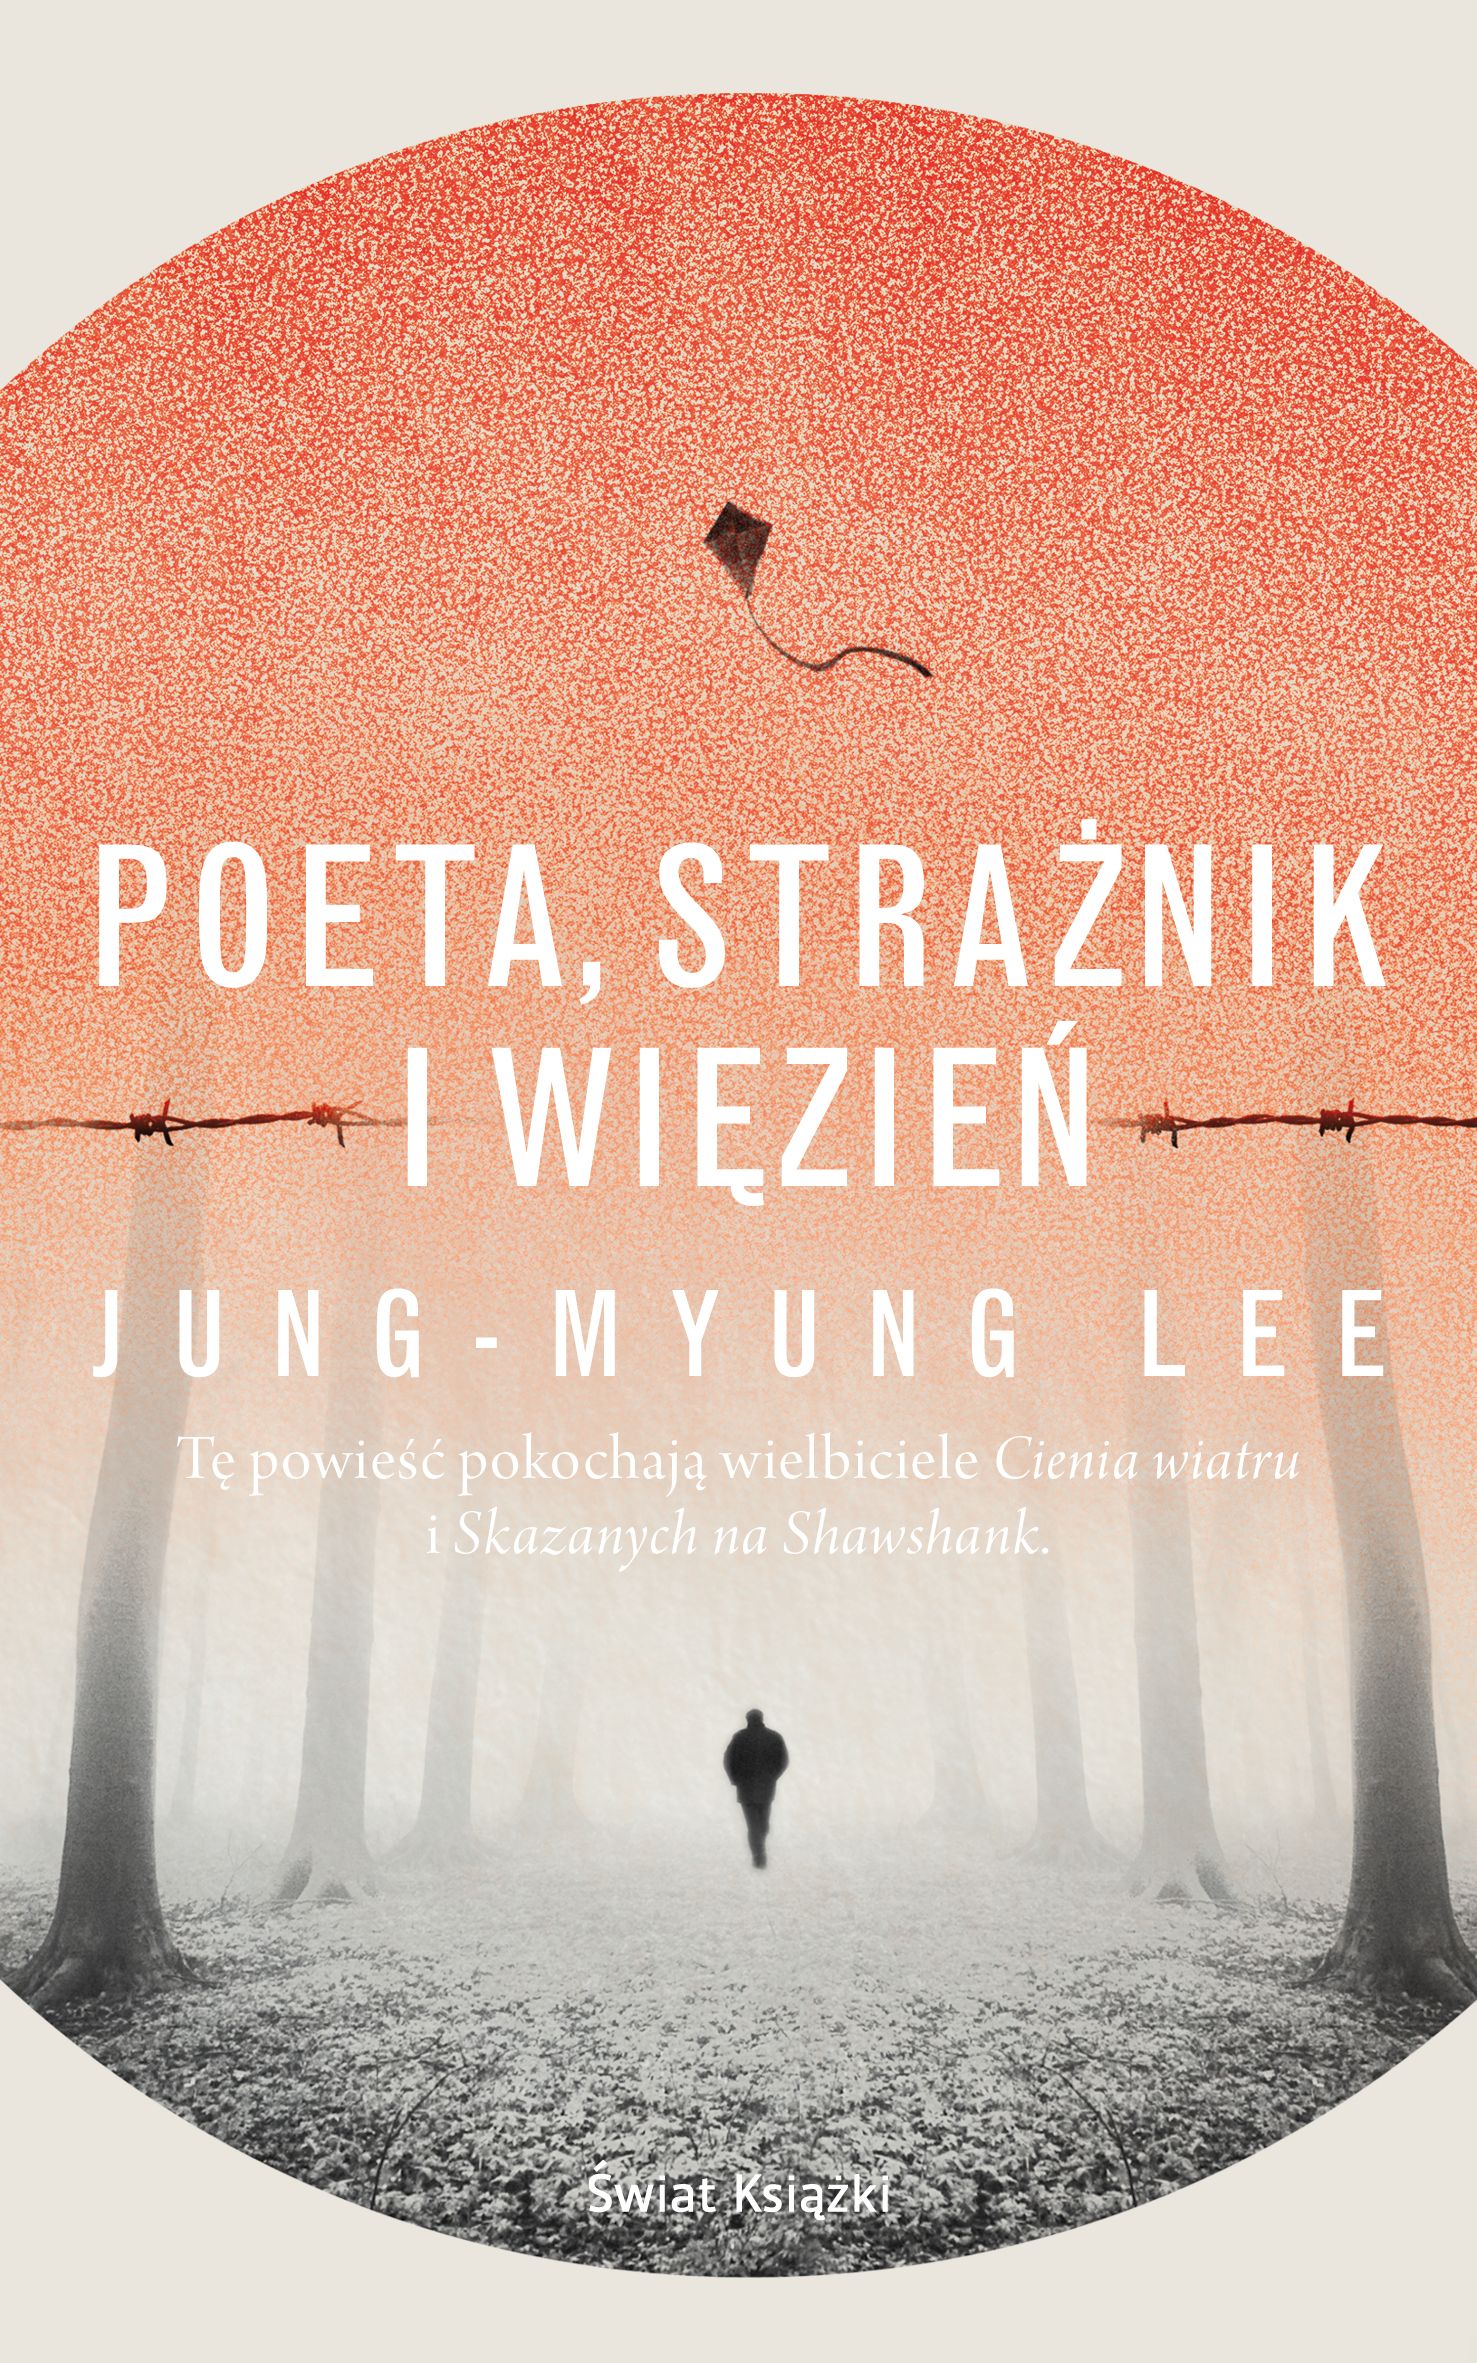 Artykuł powstał między innymi na podstawie książki Jung-Myung Lee pod tytułem "Poeta, strażnik i więzień" (Świat Książki 2016).